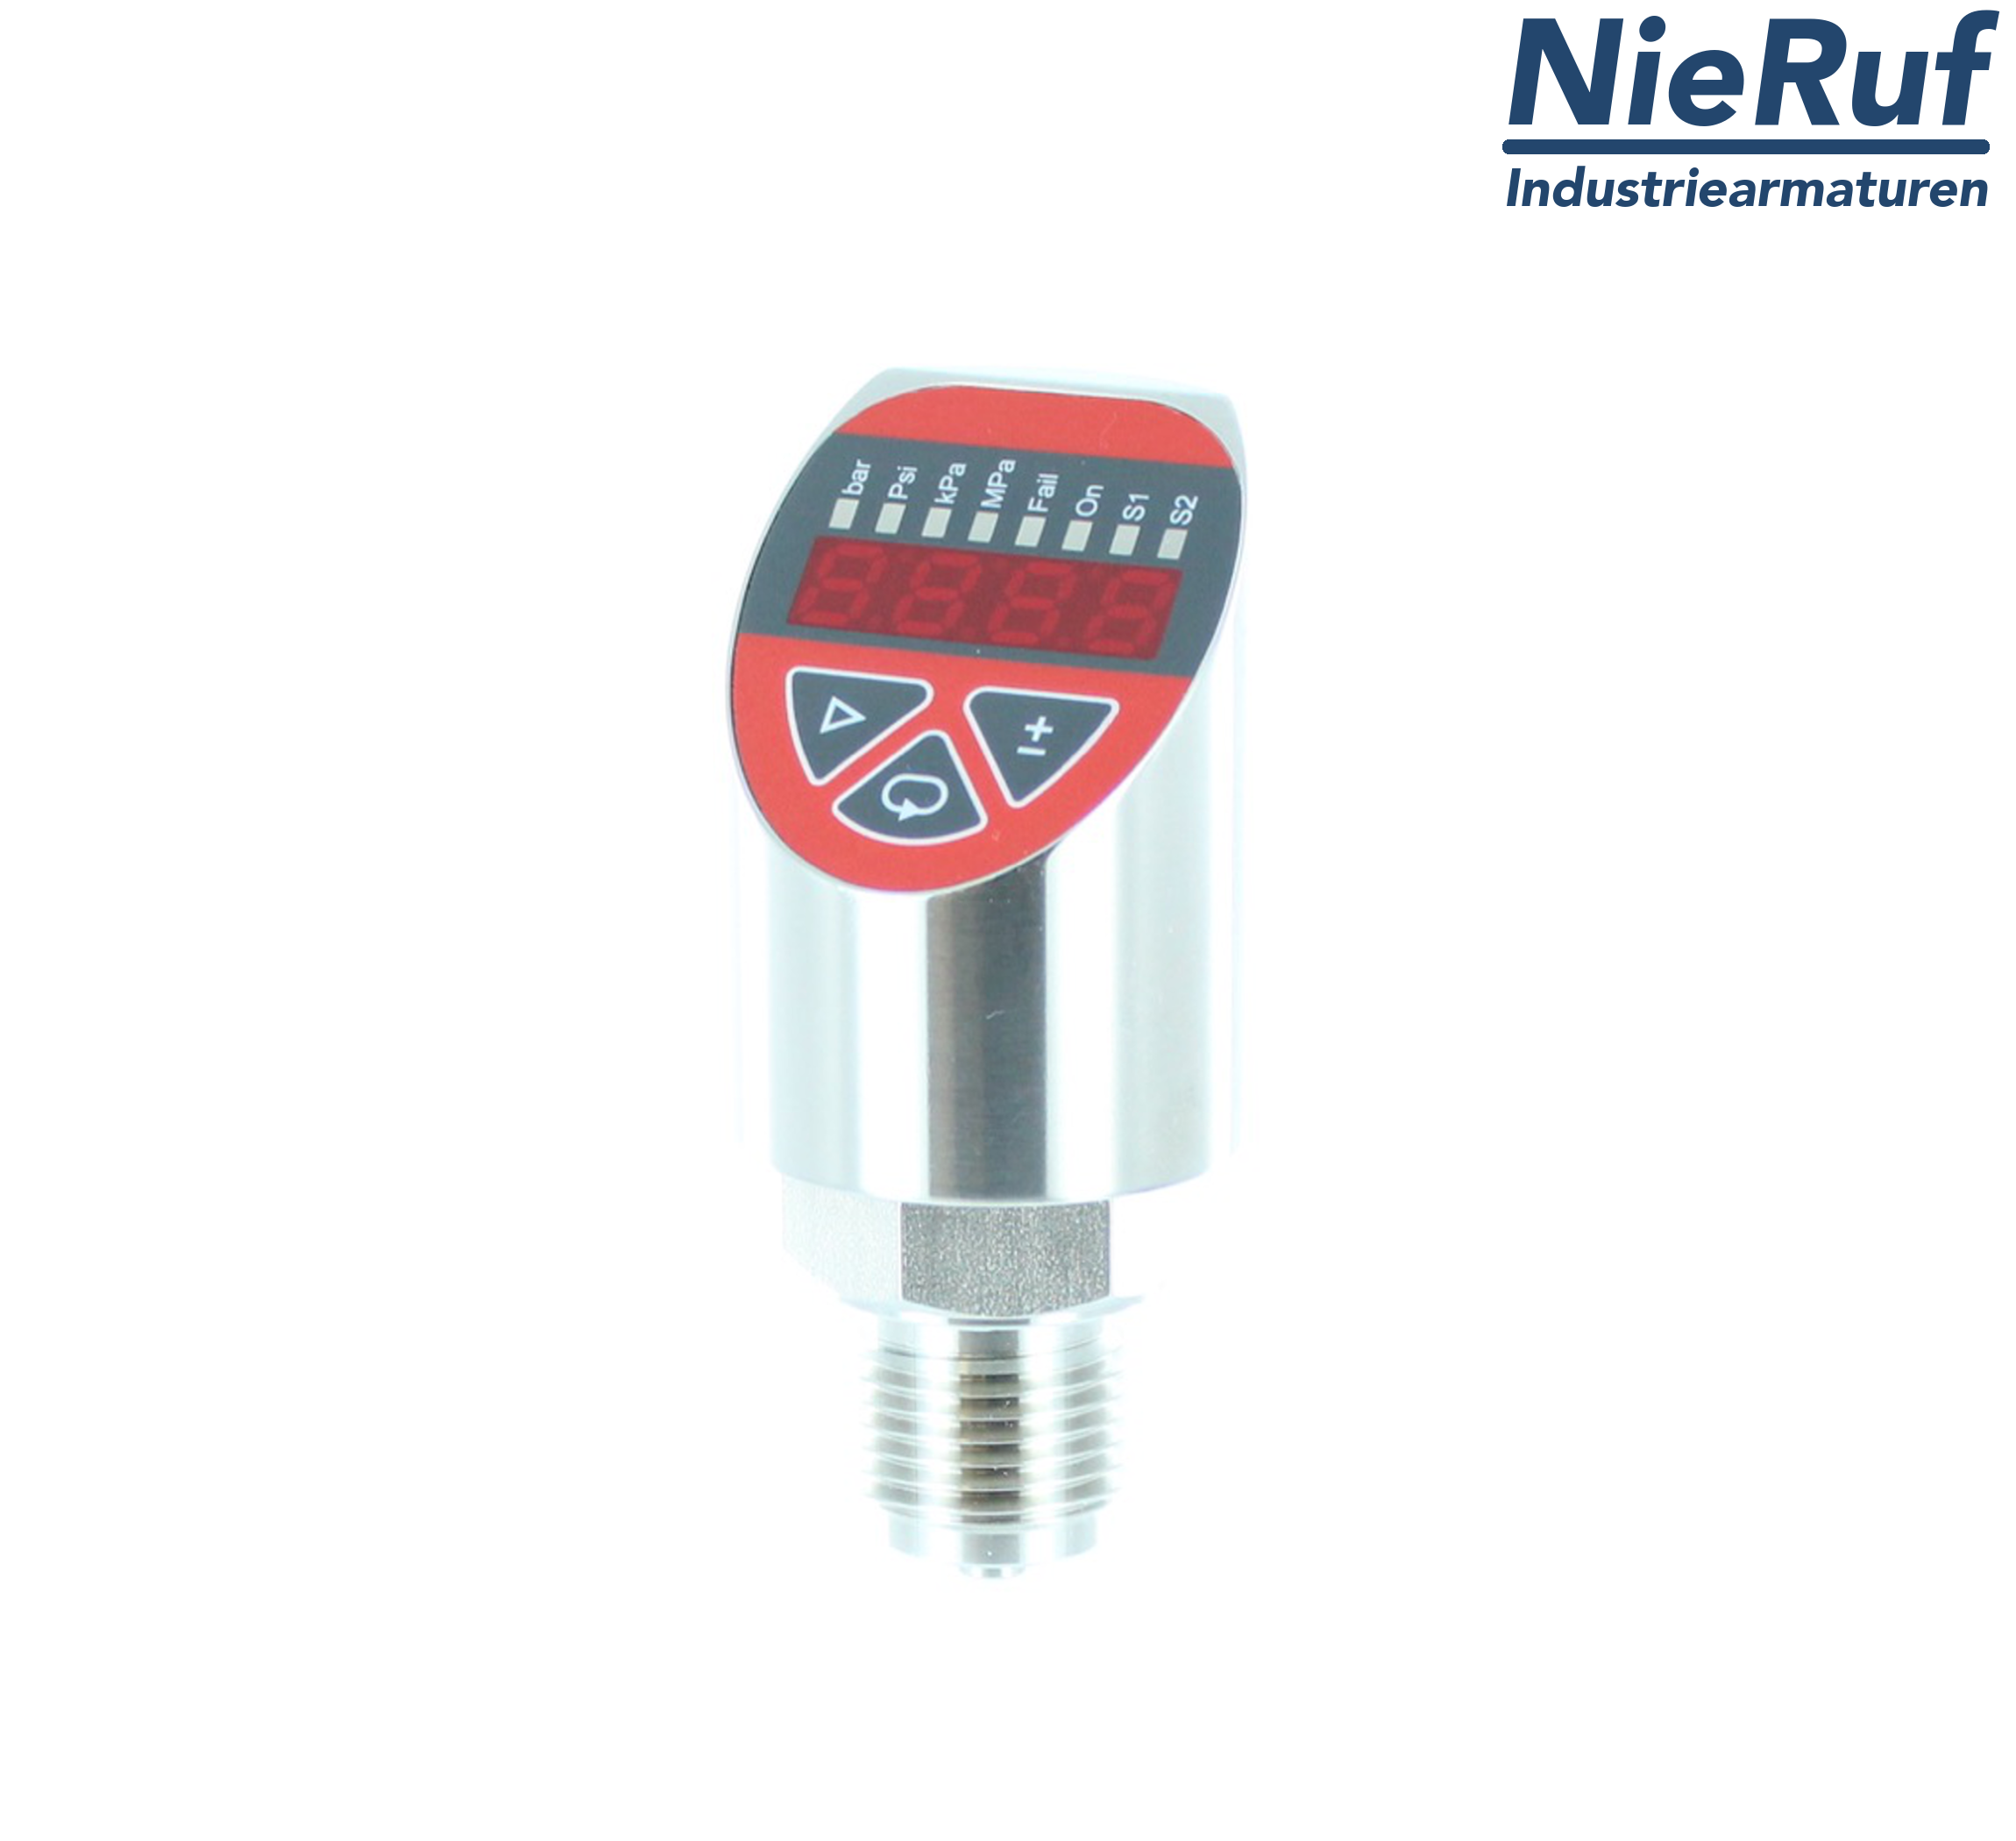 digital pressure sensor G 1/2" B IB 5-wire: 2xPNP, 1x4 - 20mA FPM 0,0 - 160,0 bar